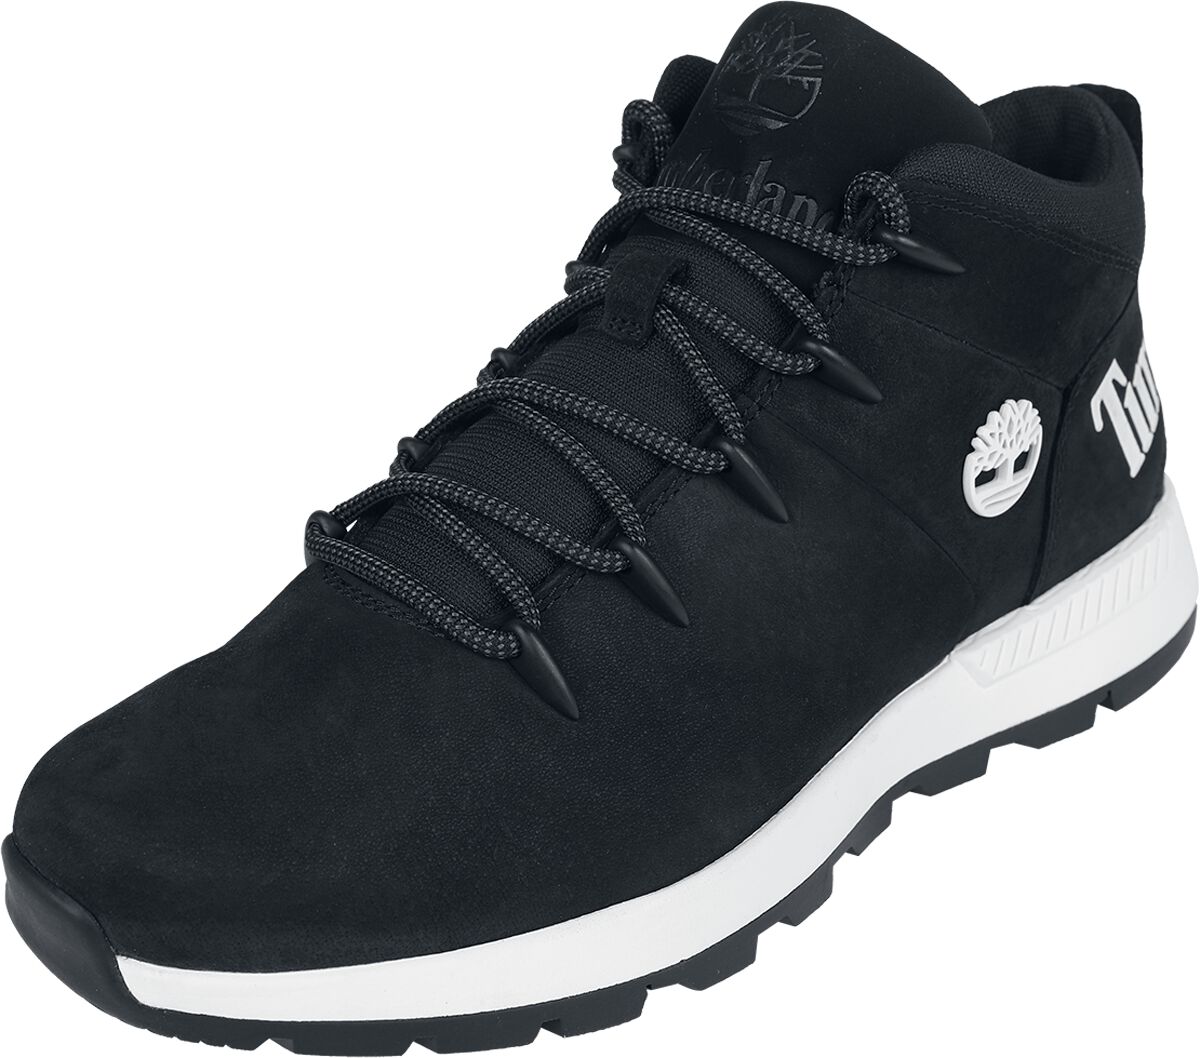 Timberland Sneaker - Sprint Trekker Mid Lace Up - EU41 bis EU46 - für Männer - Größe EU45 - schwarz